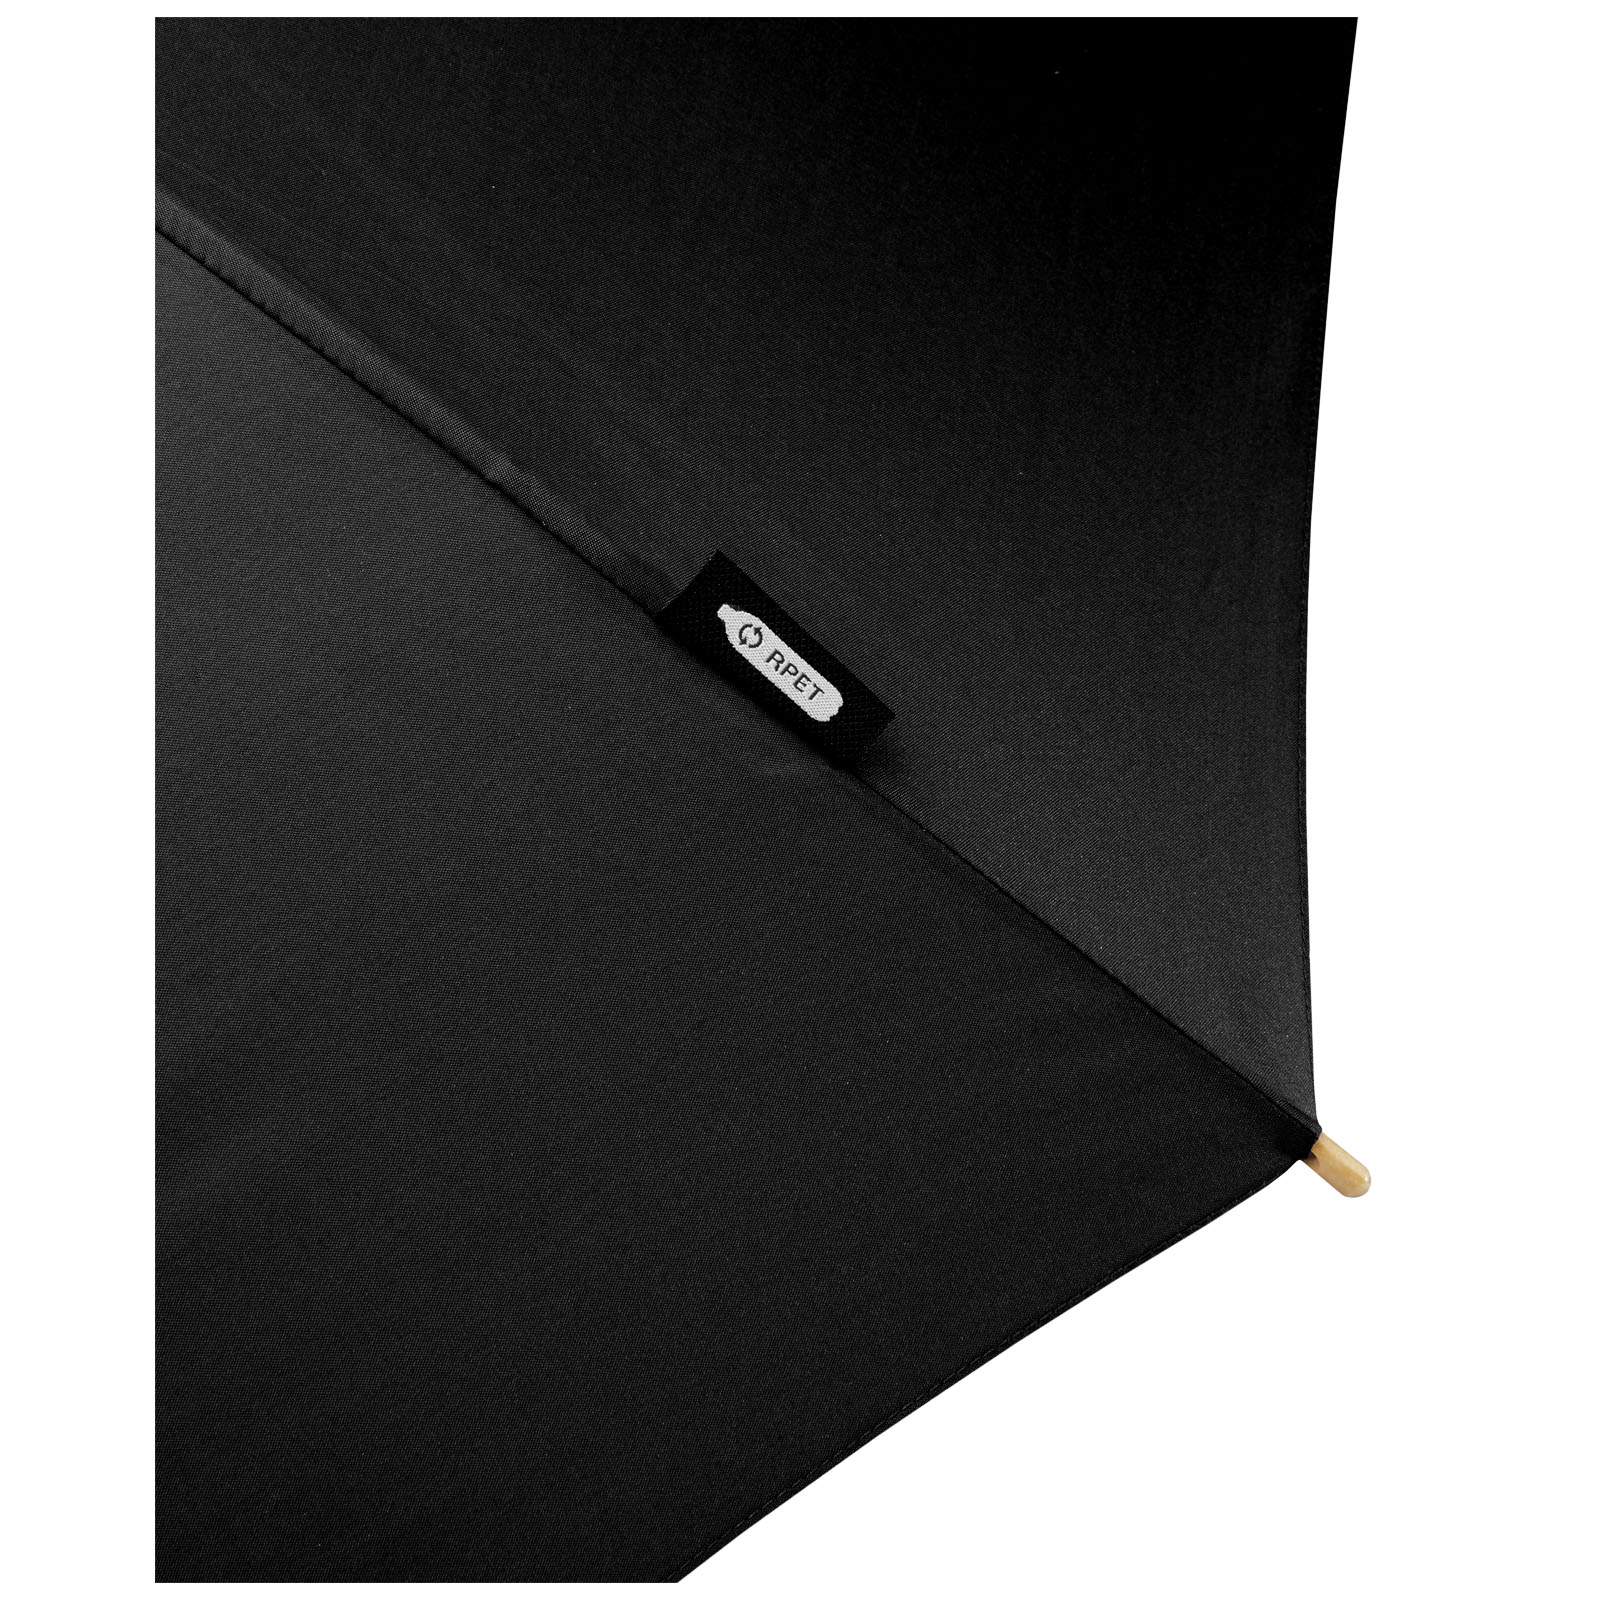 Advertising Standard Umbrellas - Alina 23